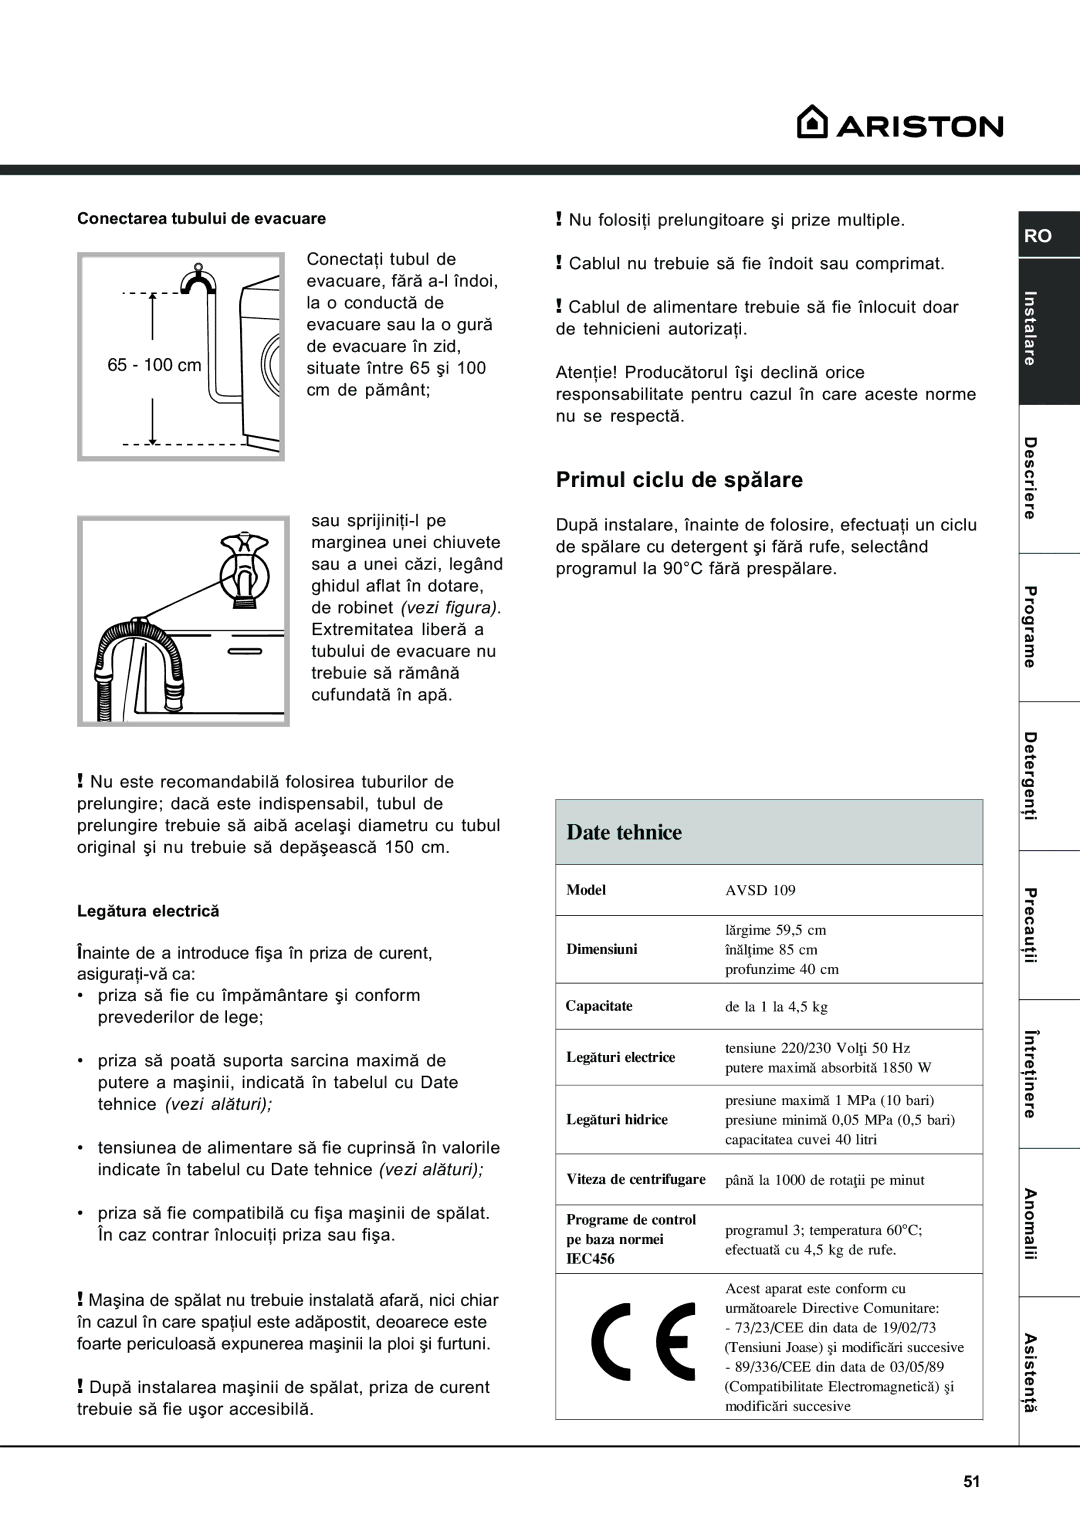 Ariston AVSD 109 manual Primul ciclu de spãlare, Date tehnice 